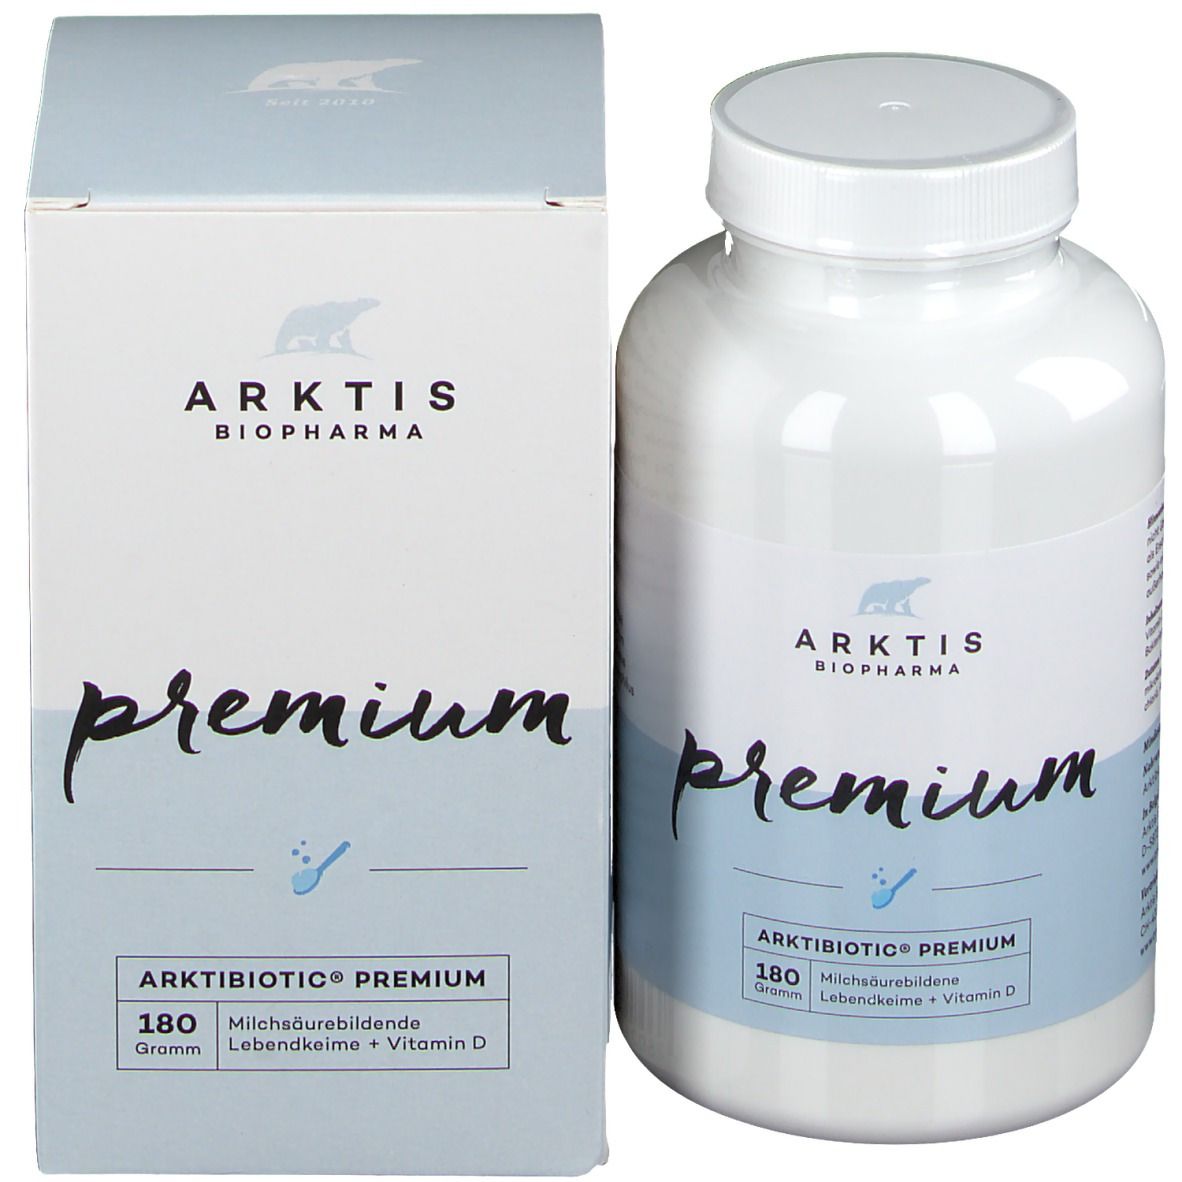 ARKTIBIOTIK® Premium